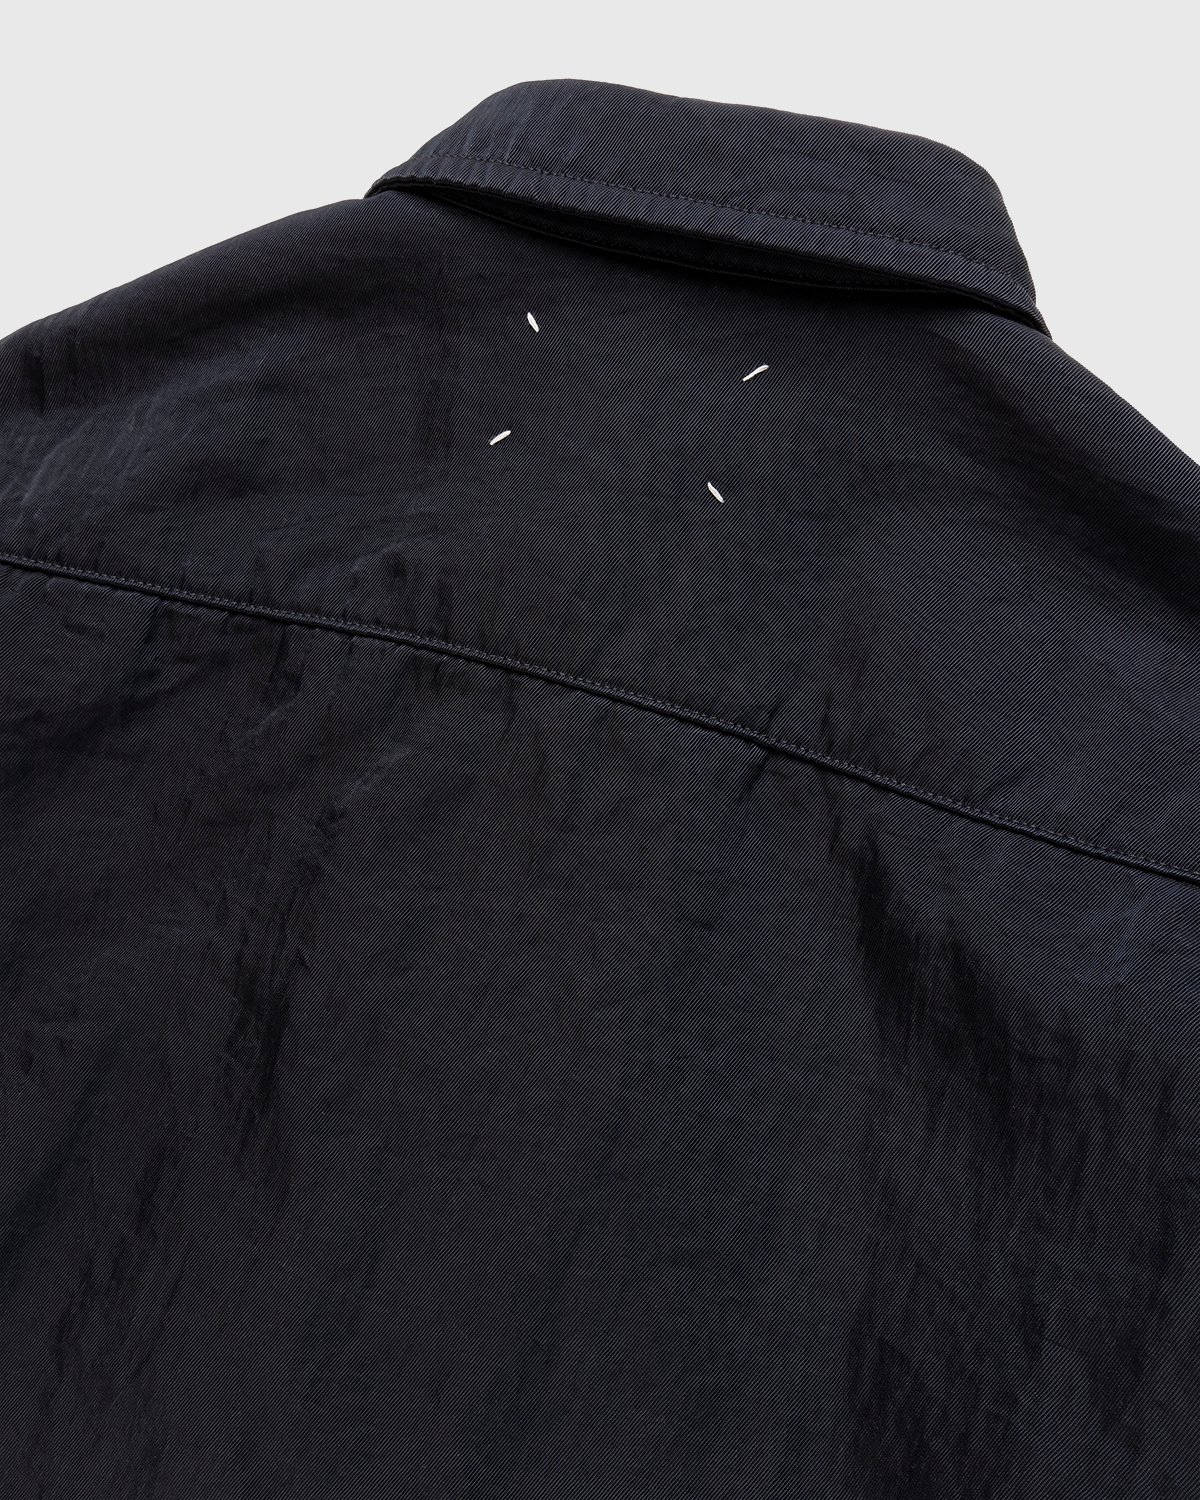 Maison Margiela - Oversized Nylon Jacket Navy - Clothing - Black - Image 3